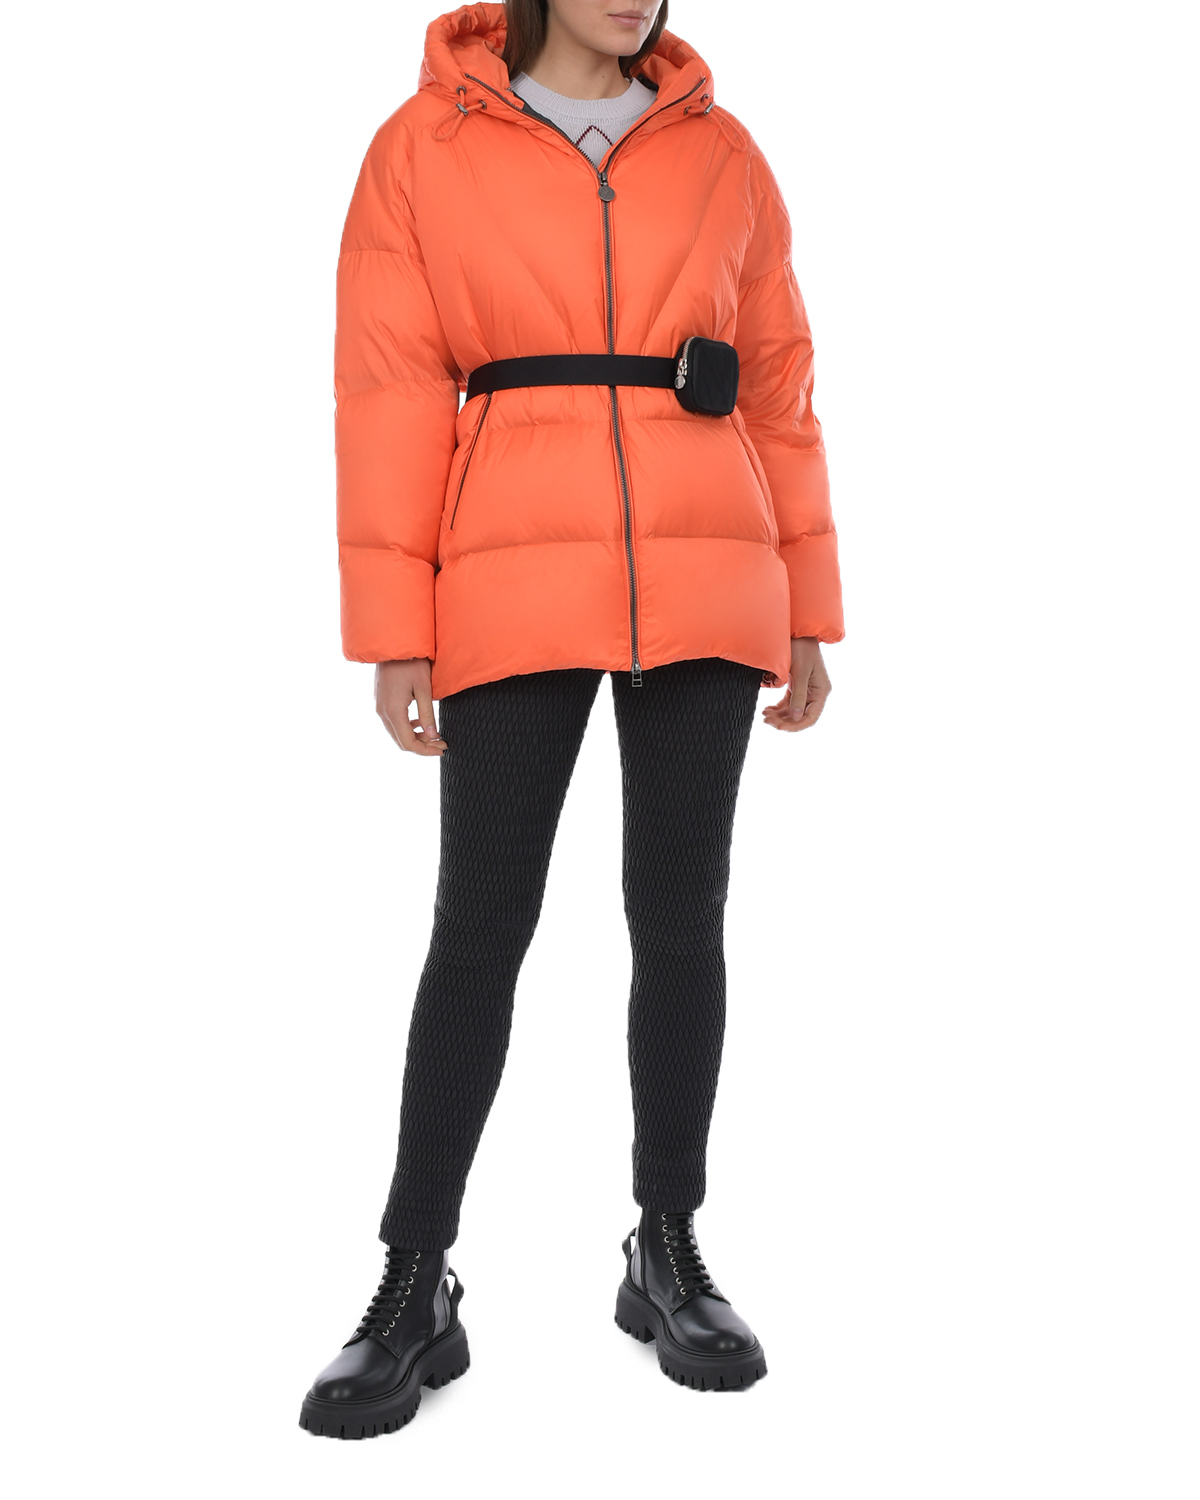 Удлиненная оранжевая куртка с капюшоном Naumi, размер 38, цвет оранжевый - фото 3